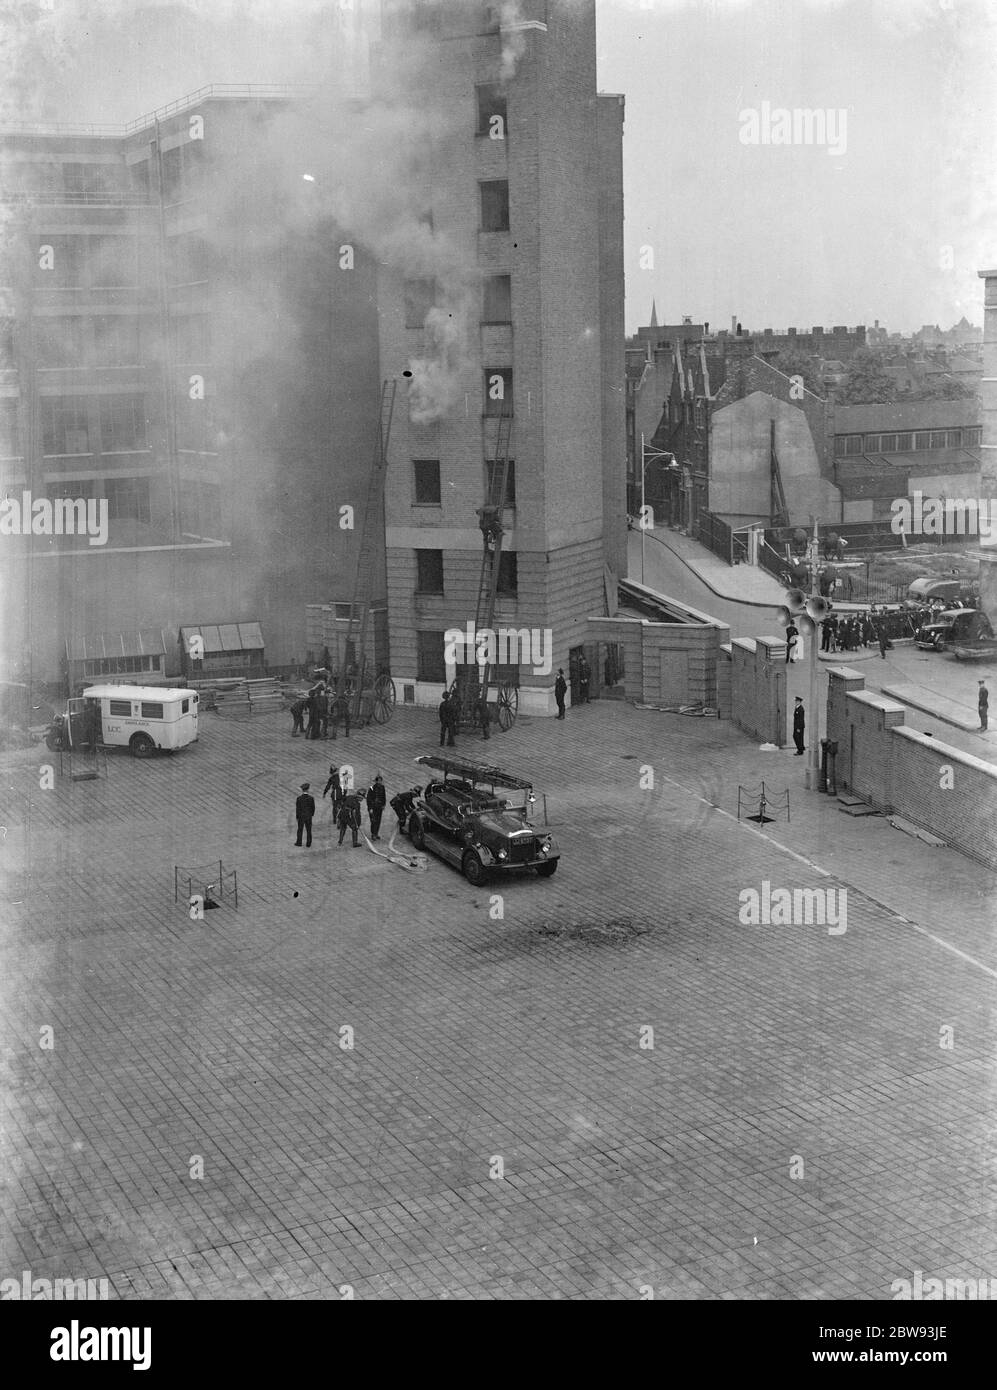 Eine Ausstellung der Londoner Feuerwehr in Lambeth, London. Feuerwehrleute verwenden Verlängerung Leitern, um ein hohes Gebäude während der Demonstration zu steigen. 1939 Stockfoto